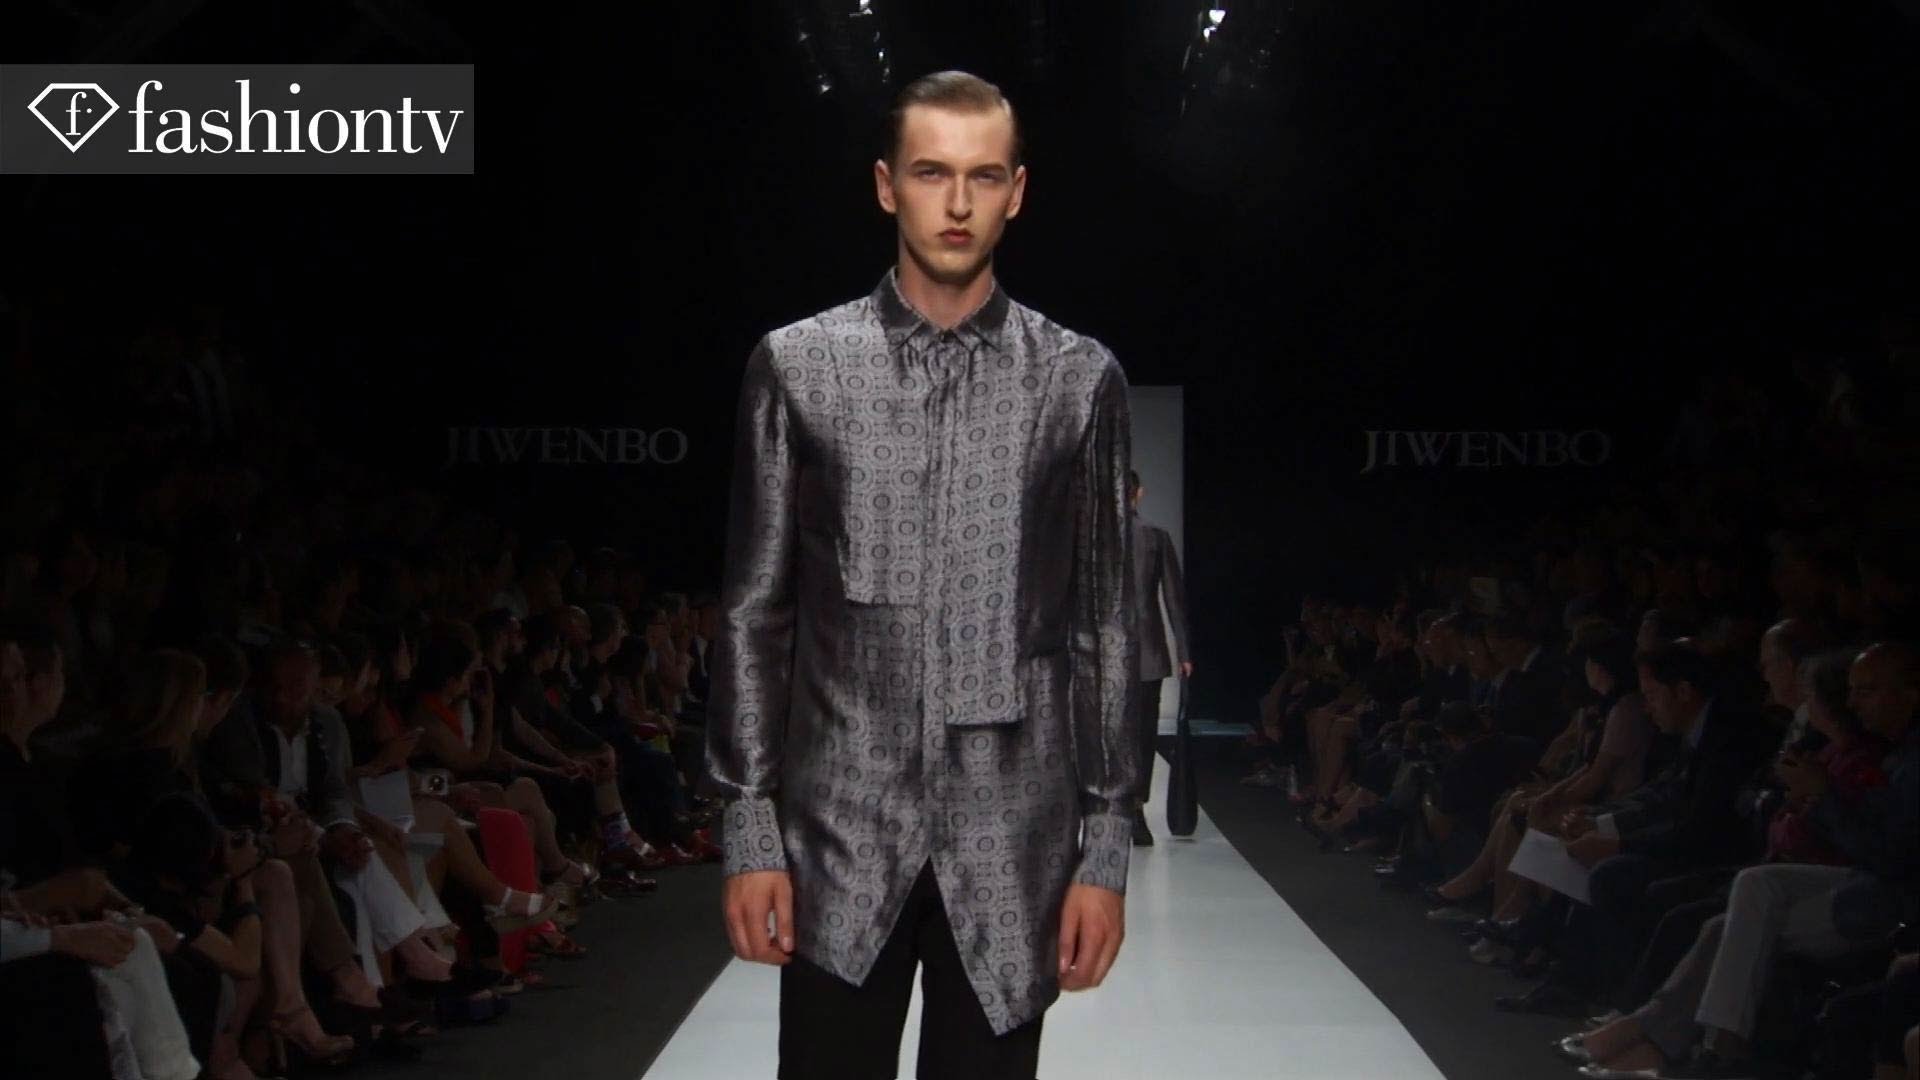 Jiwenbo Men Wiosna/Lato 2014  Milan Men's Fashion Week  